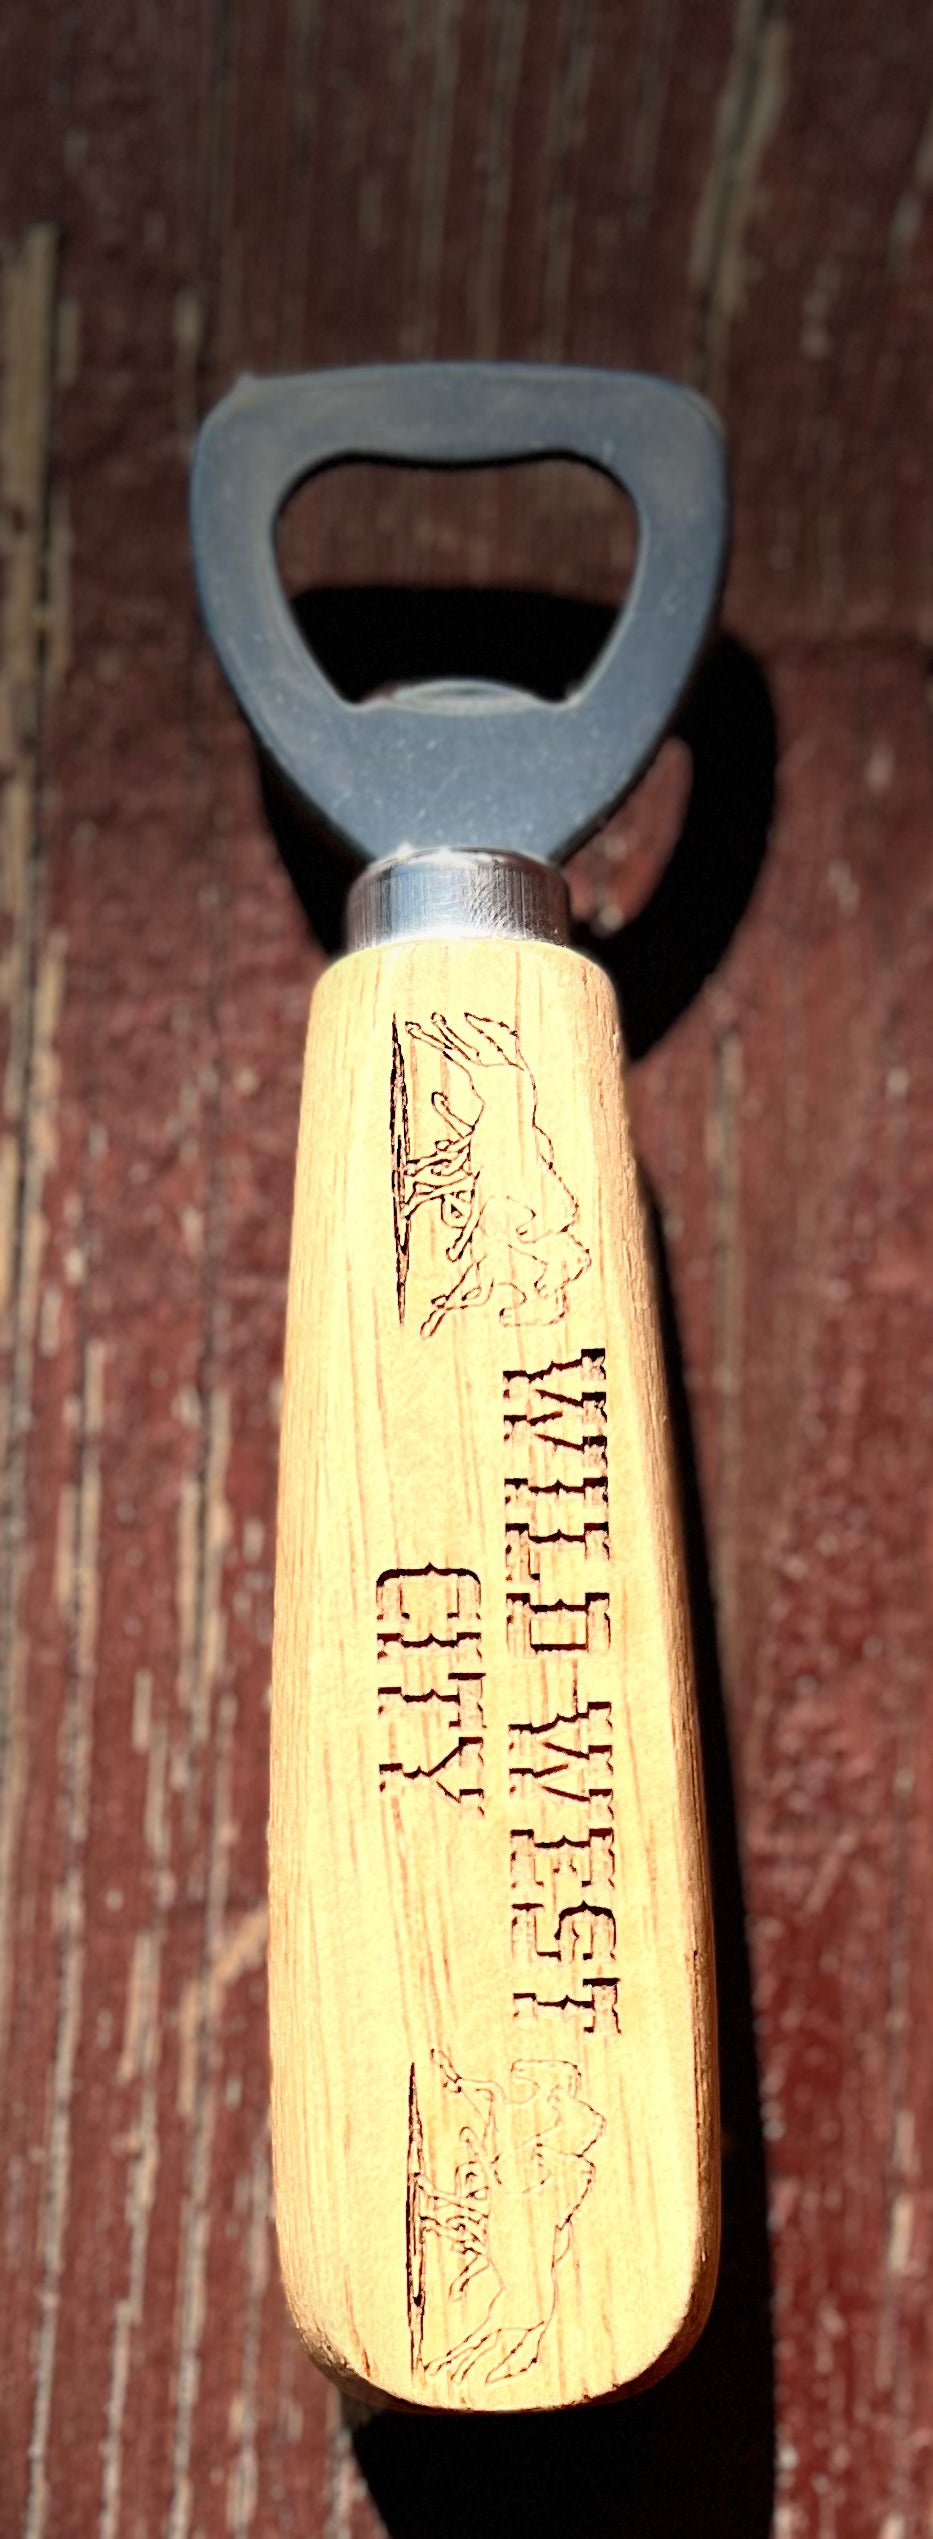 Wooden Wild West City Bottle Opener